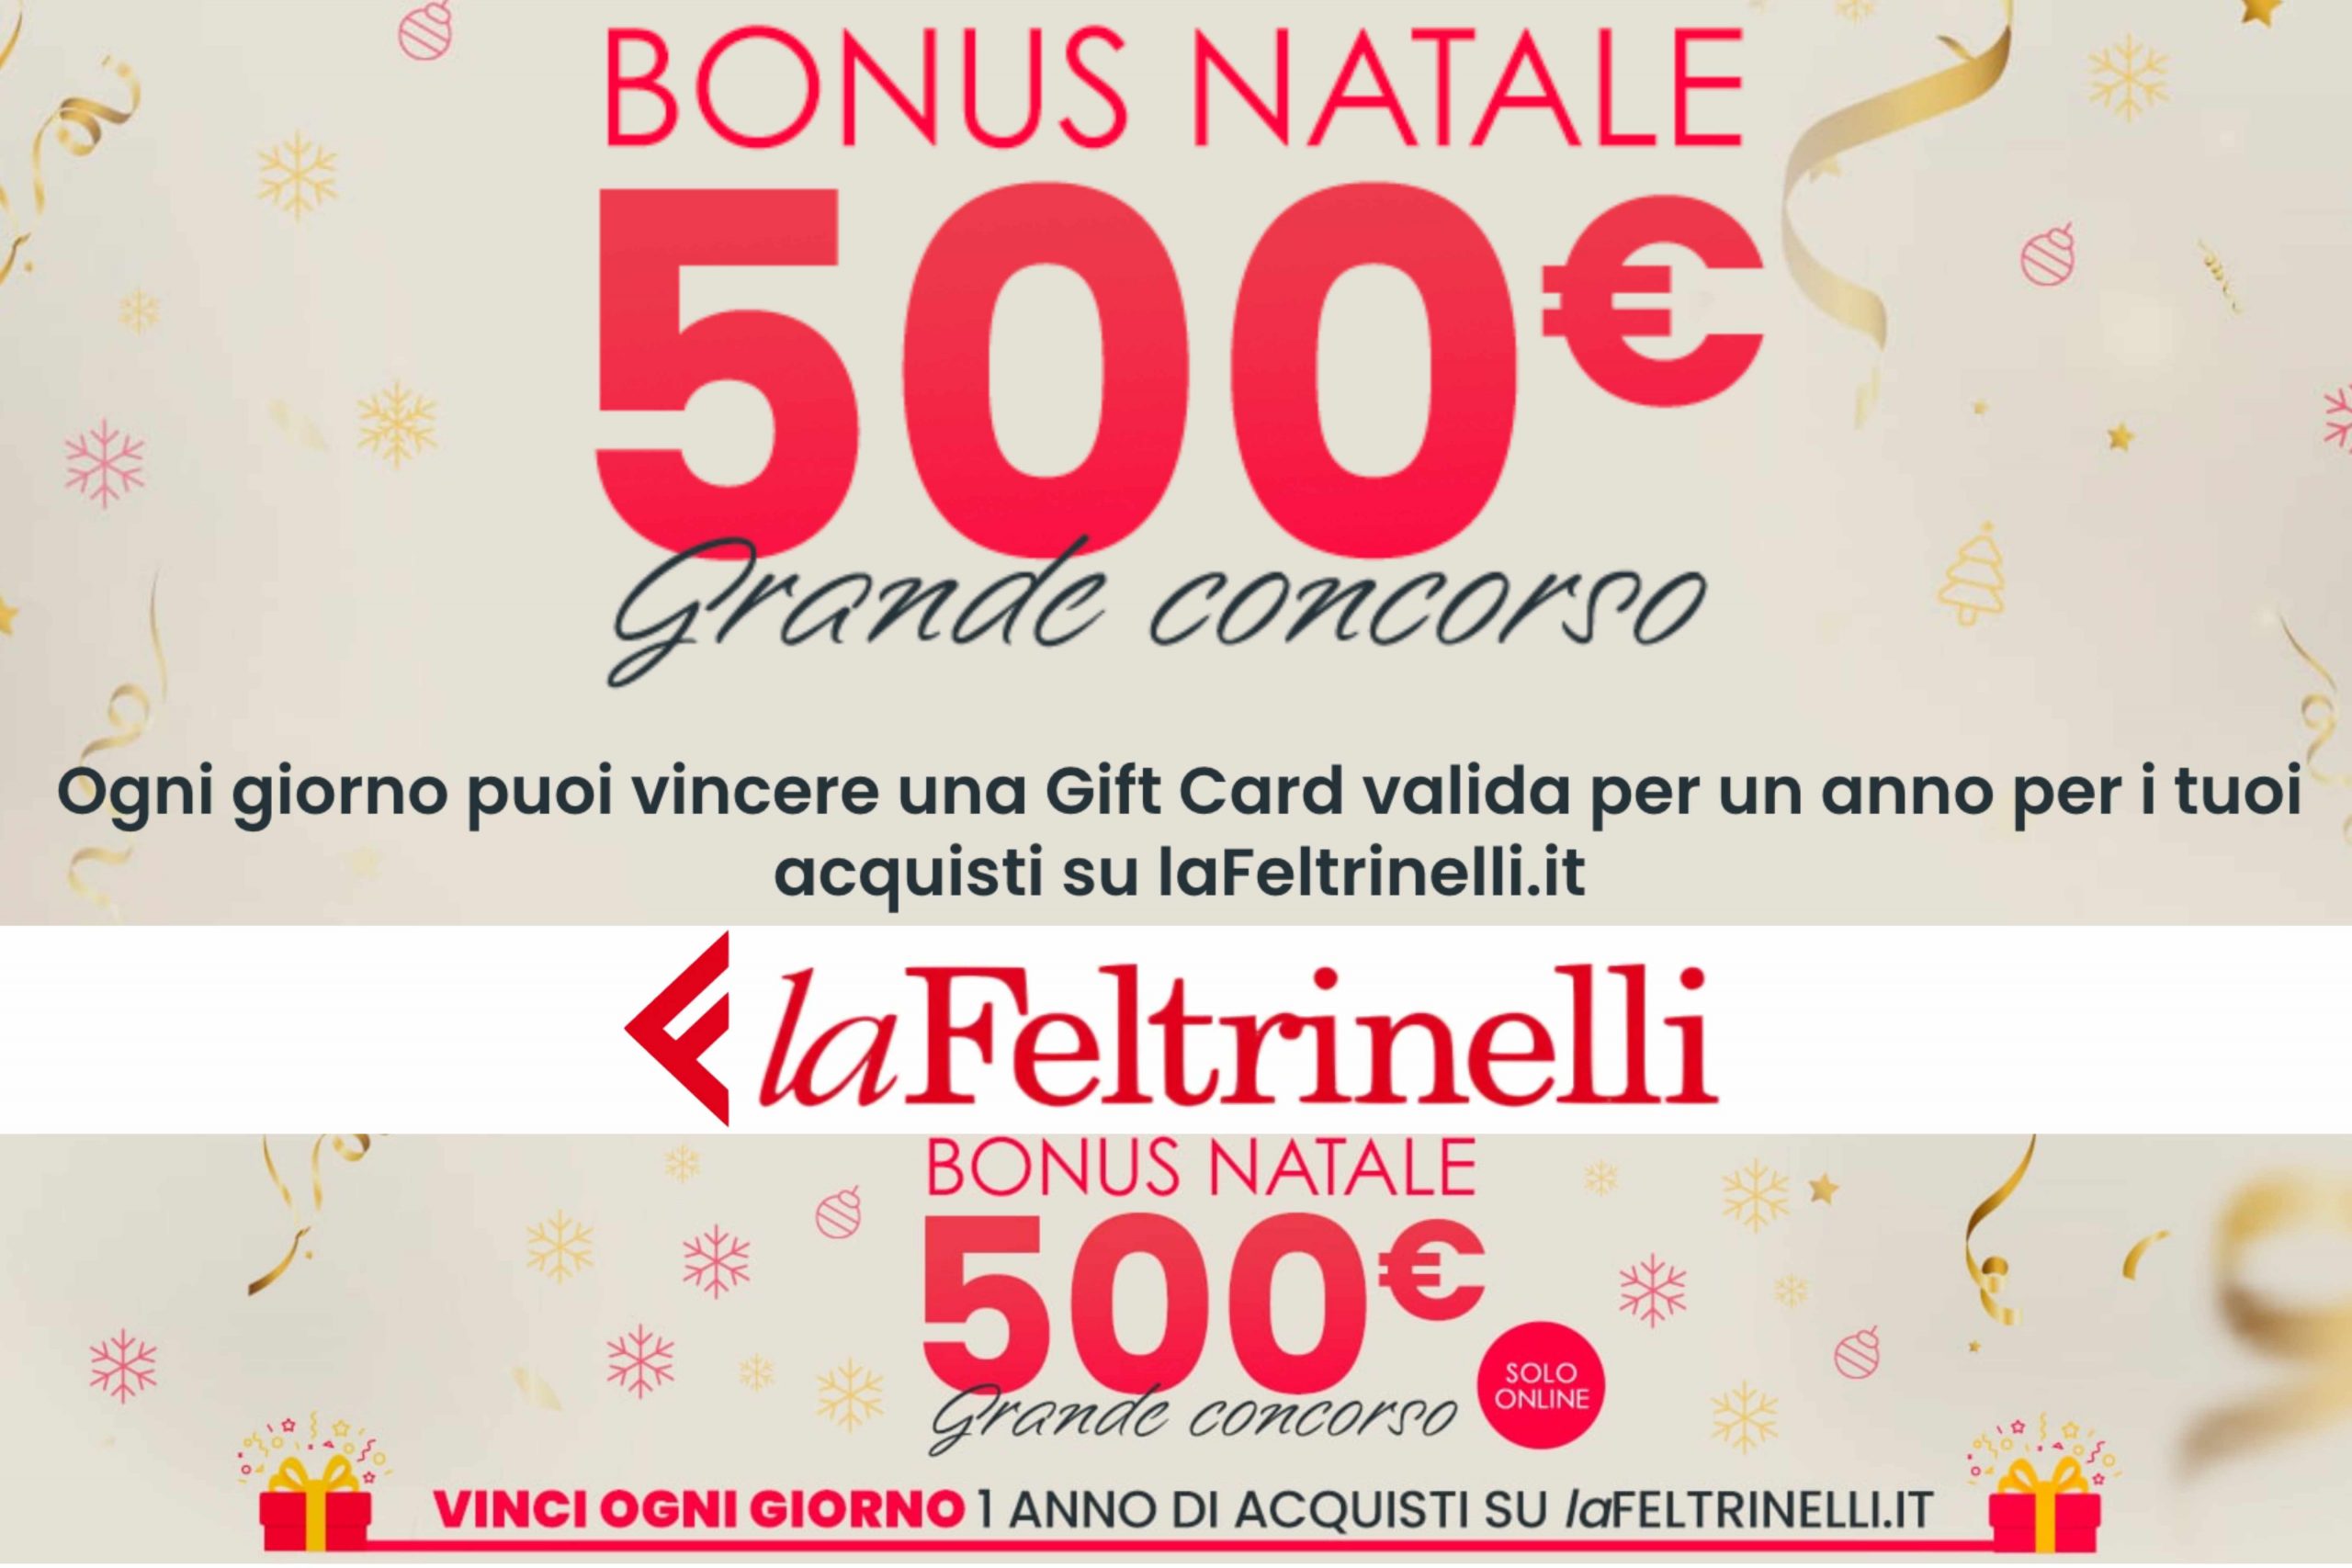 Concorso “Bonus Natale 500€” laFeltrinelli: come vincere una Gift Card da 500€